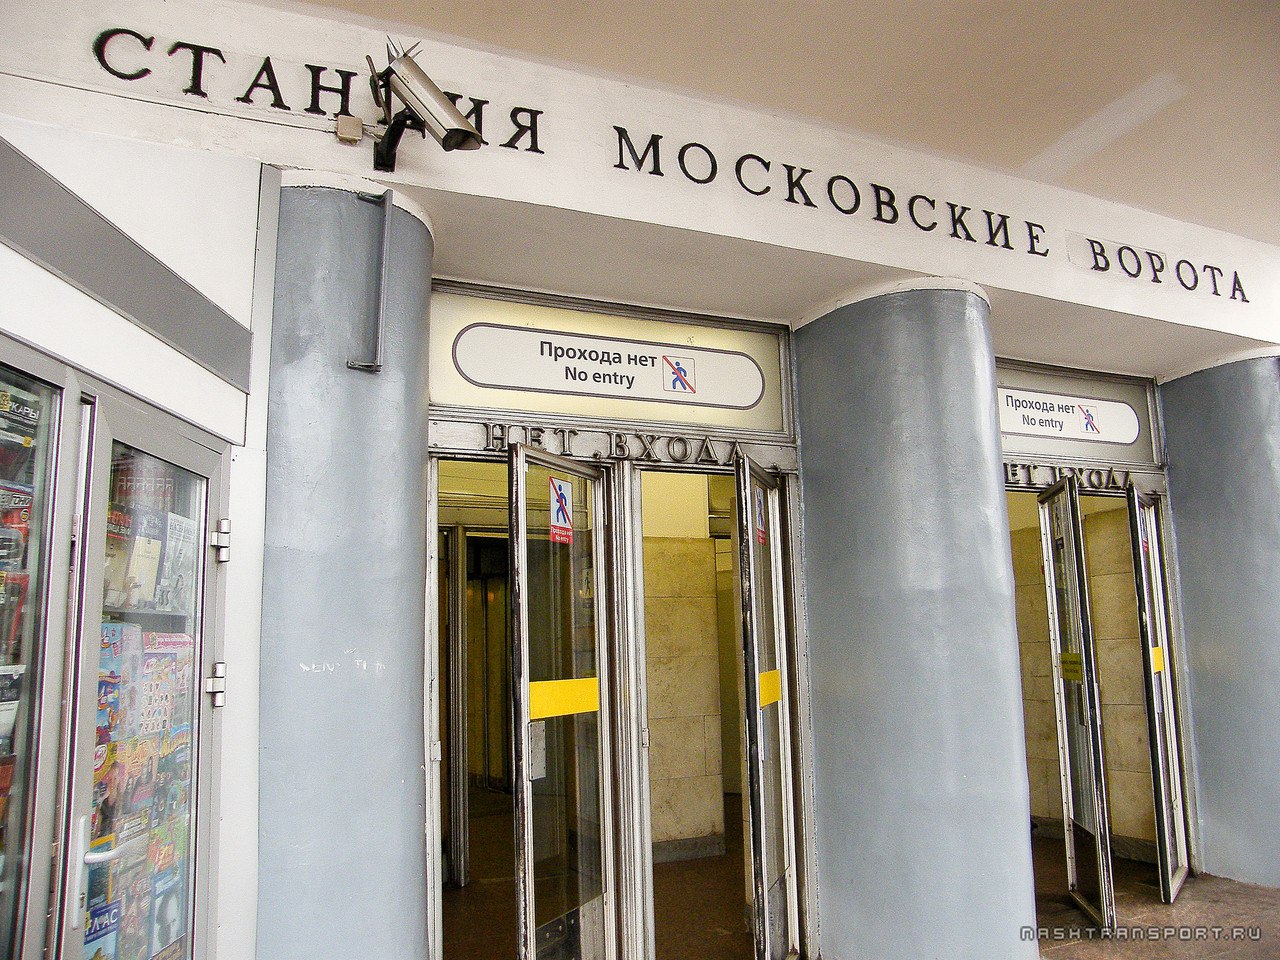 Мебельная фабрика московские ворота